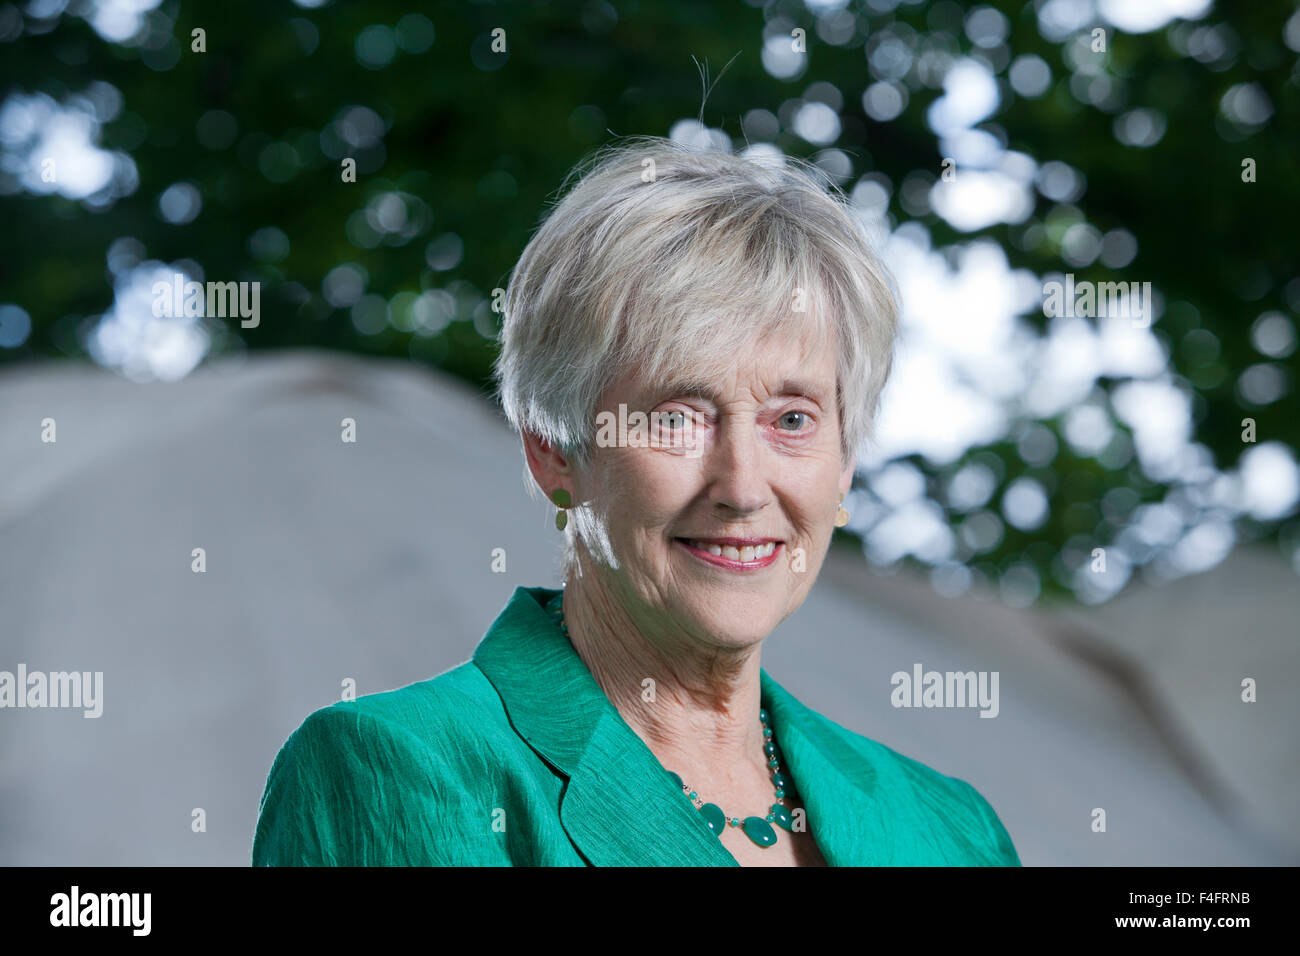 Dame Stella Rimington, DCB, l'auteur britannique et ancien directeur général du MI5, à l'Edinburgh International Book Festival 2015. Edimbourg, Ecosse. 25 août 2015 Banque D'Images